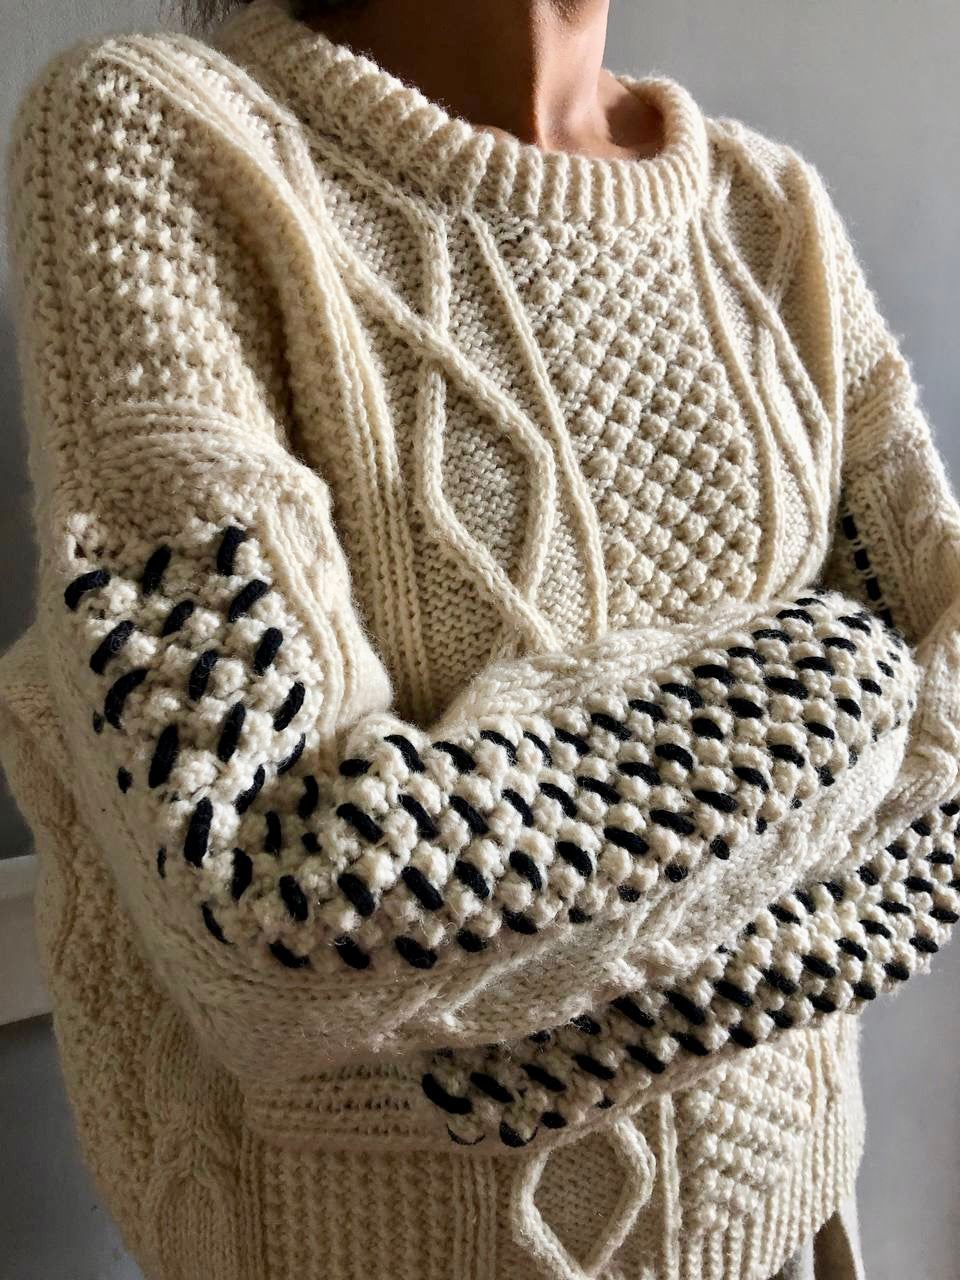 Limited Edition cord work Aran knit jumper